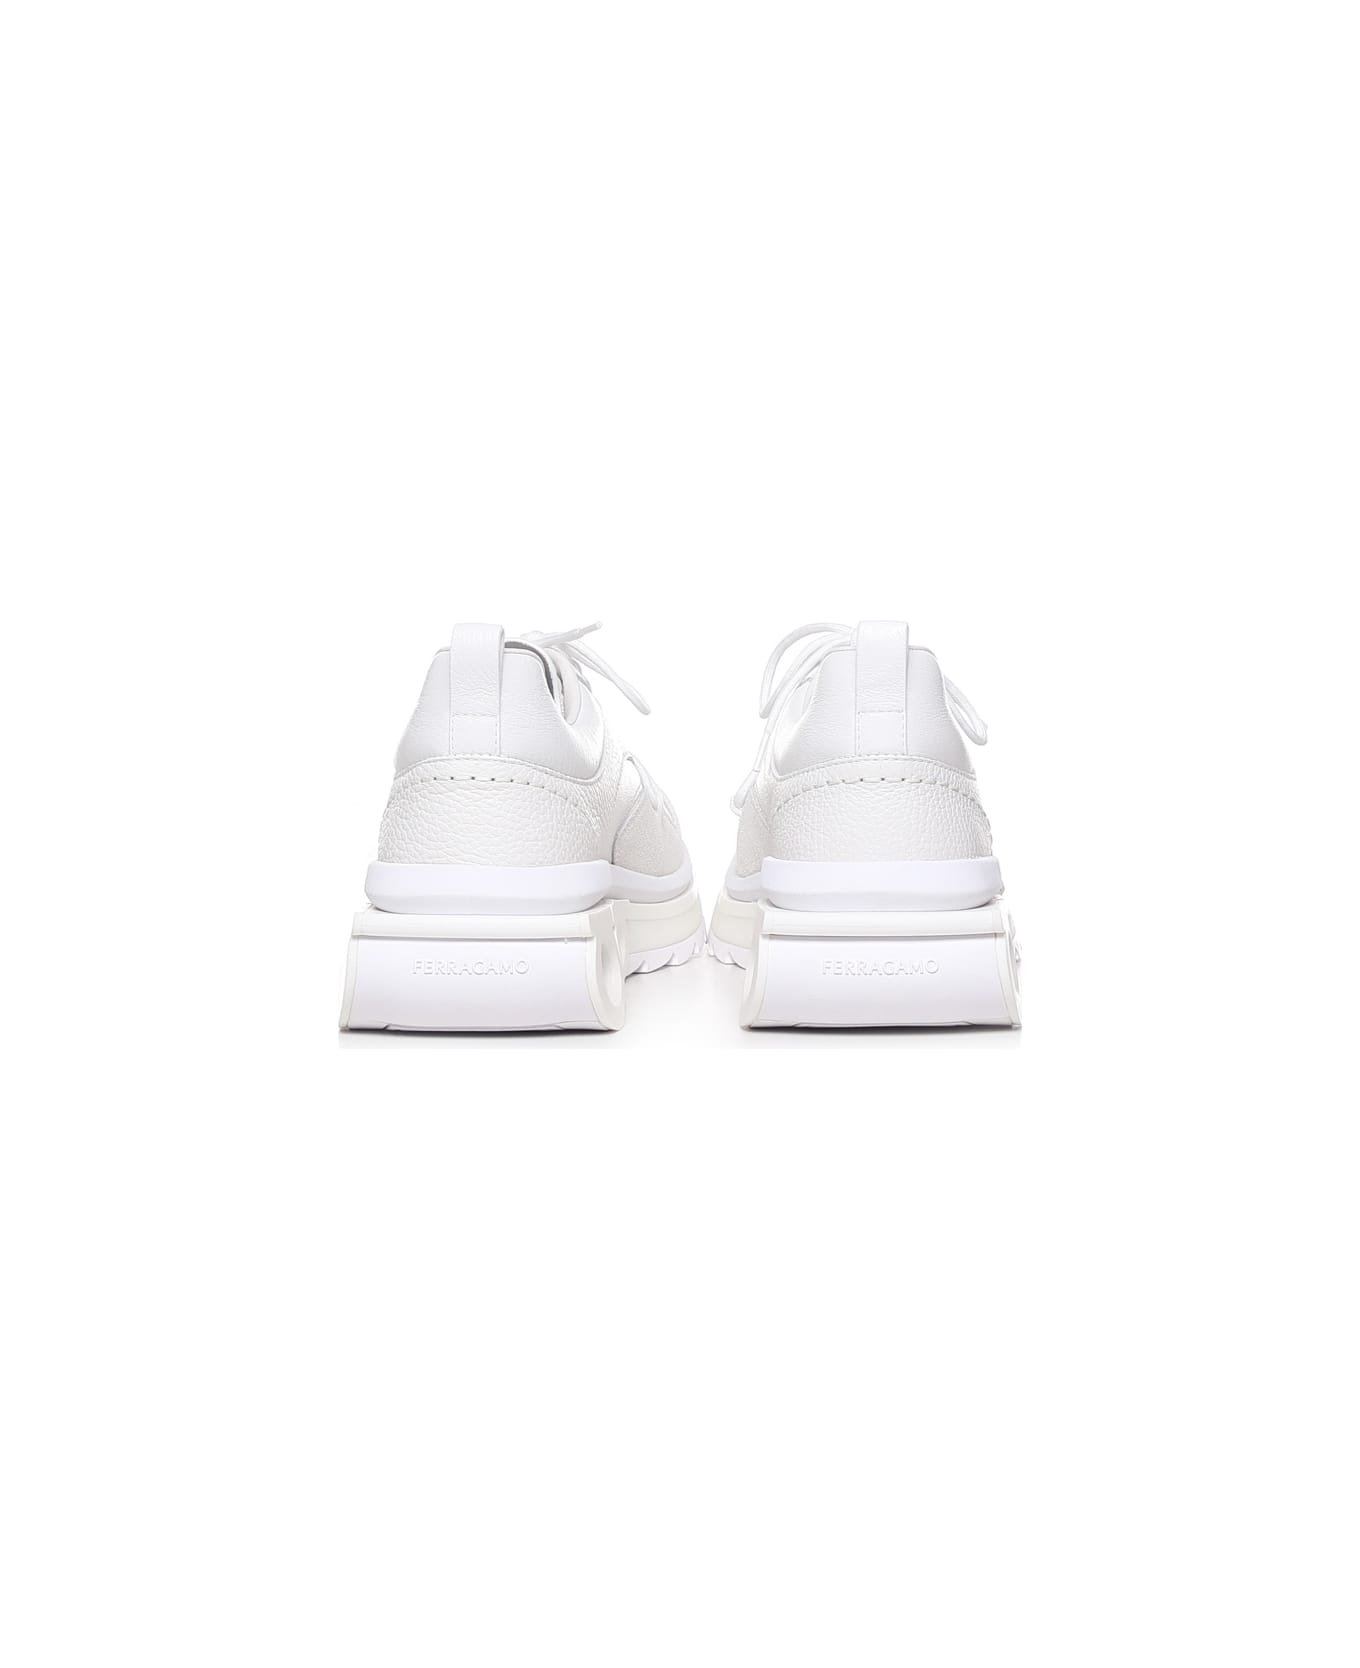 Ferragamo Sneakers With Gancini Plaque - White